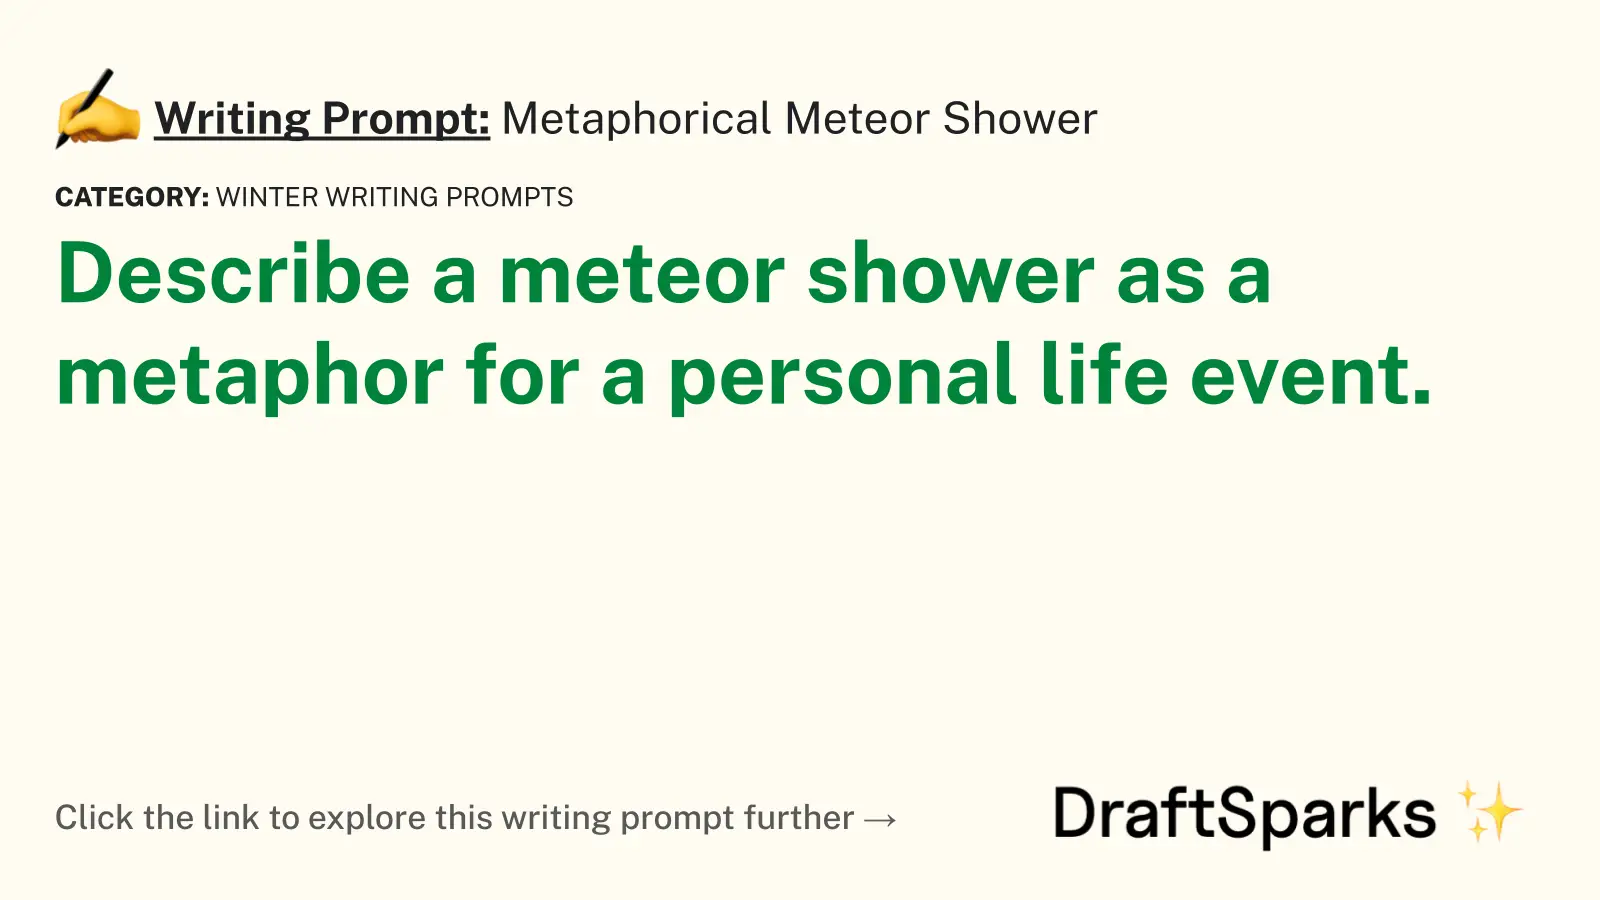 Metaphorical Meteor Shower